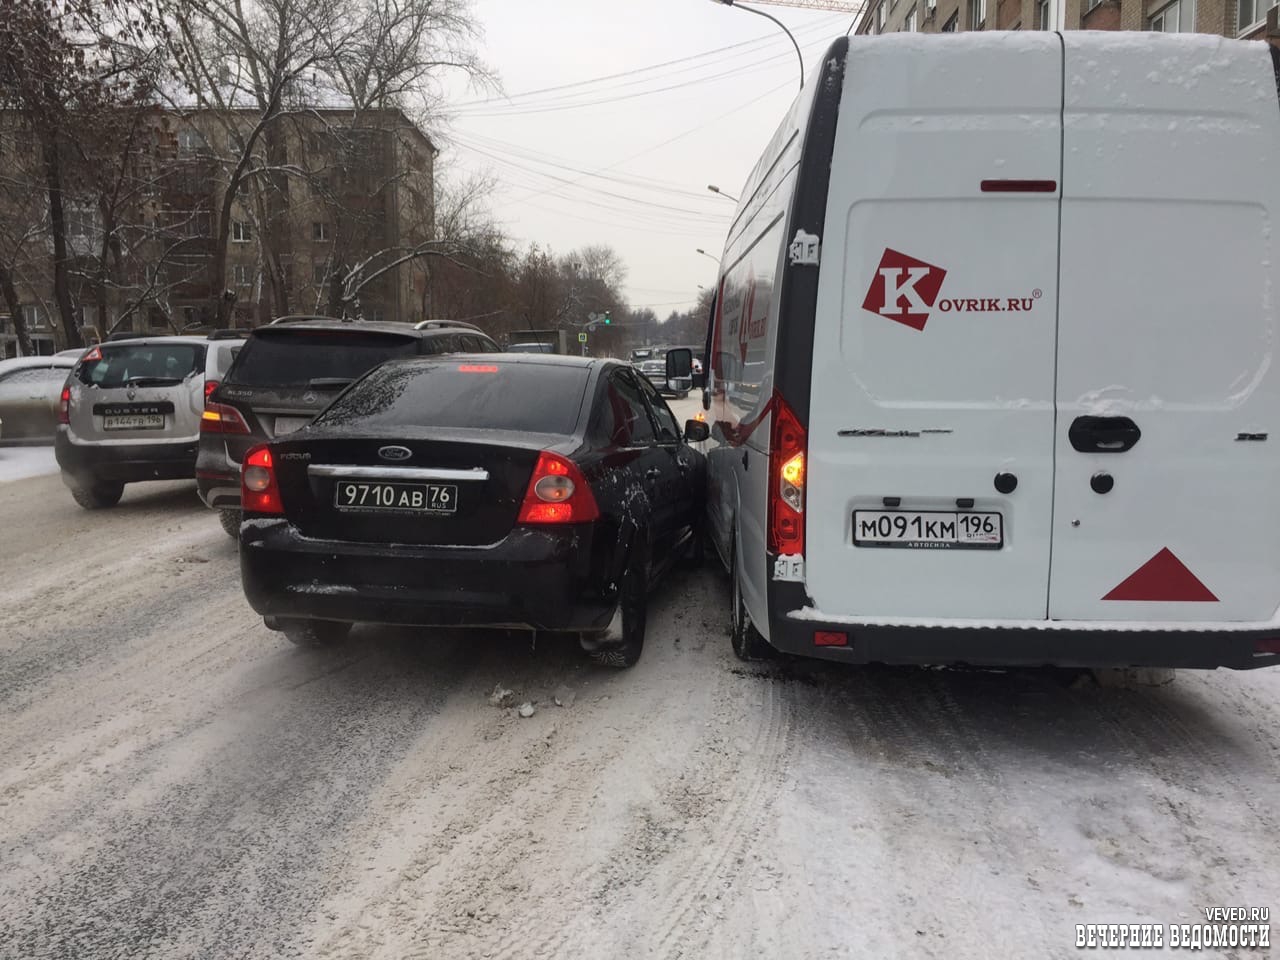 «Армейский» Форд Фокус попал в ДТП в центре Екатеринбурга